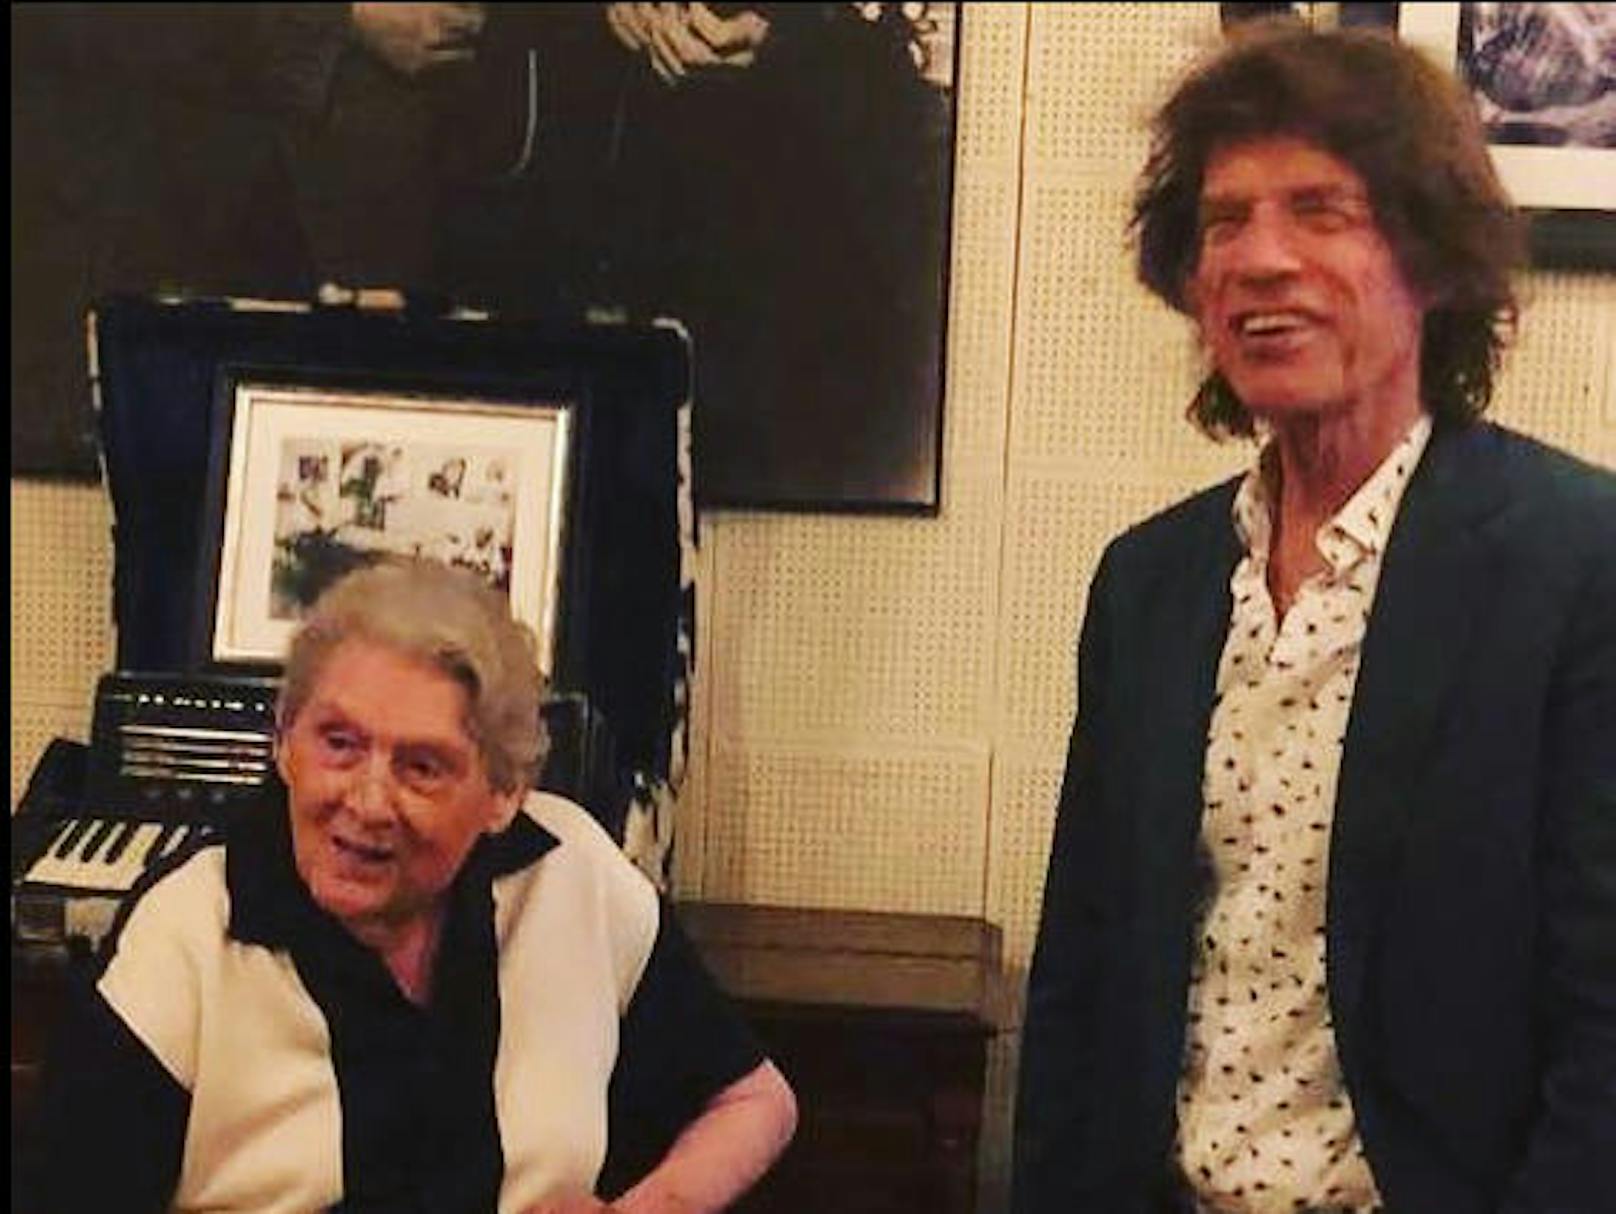 14.09.2019: Jerry Lee Lewis (82) und Mick Jagger (75) treffen sich in den legendären Sun Studios in Memphis. Witzig: Beide prahlten auf Instagram (Jagger) und Facebook (Lewis), den anderen getroffen zu haben.